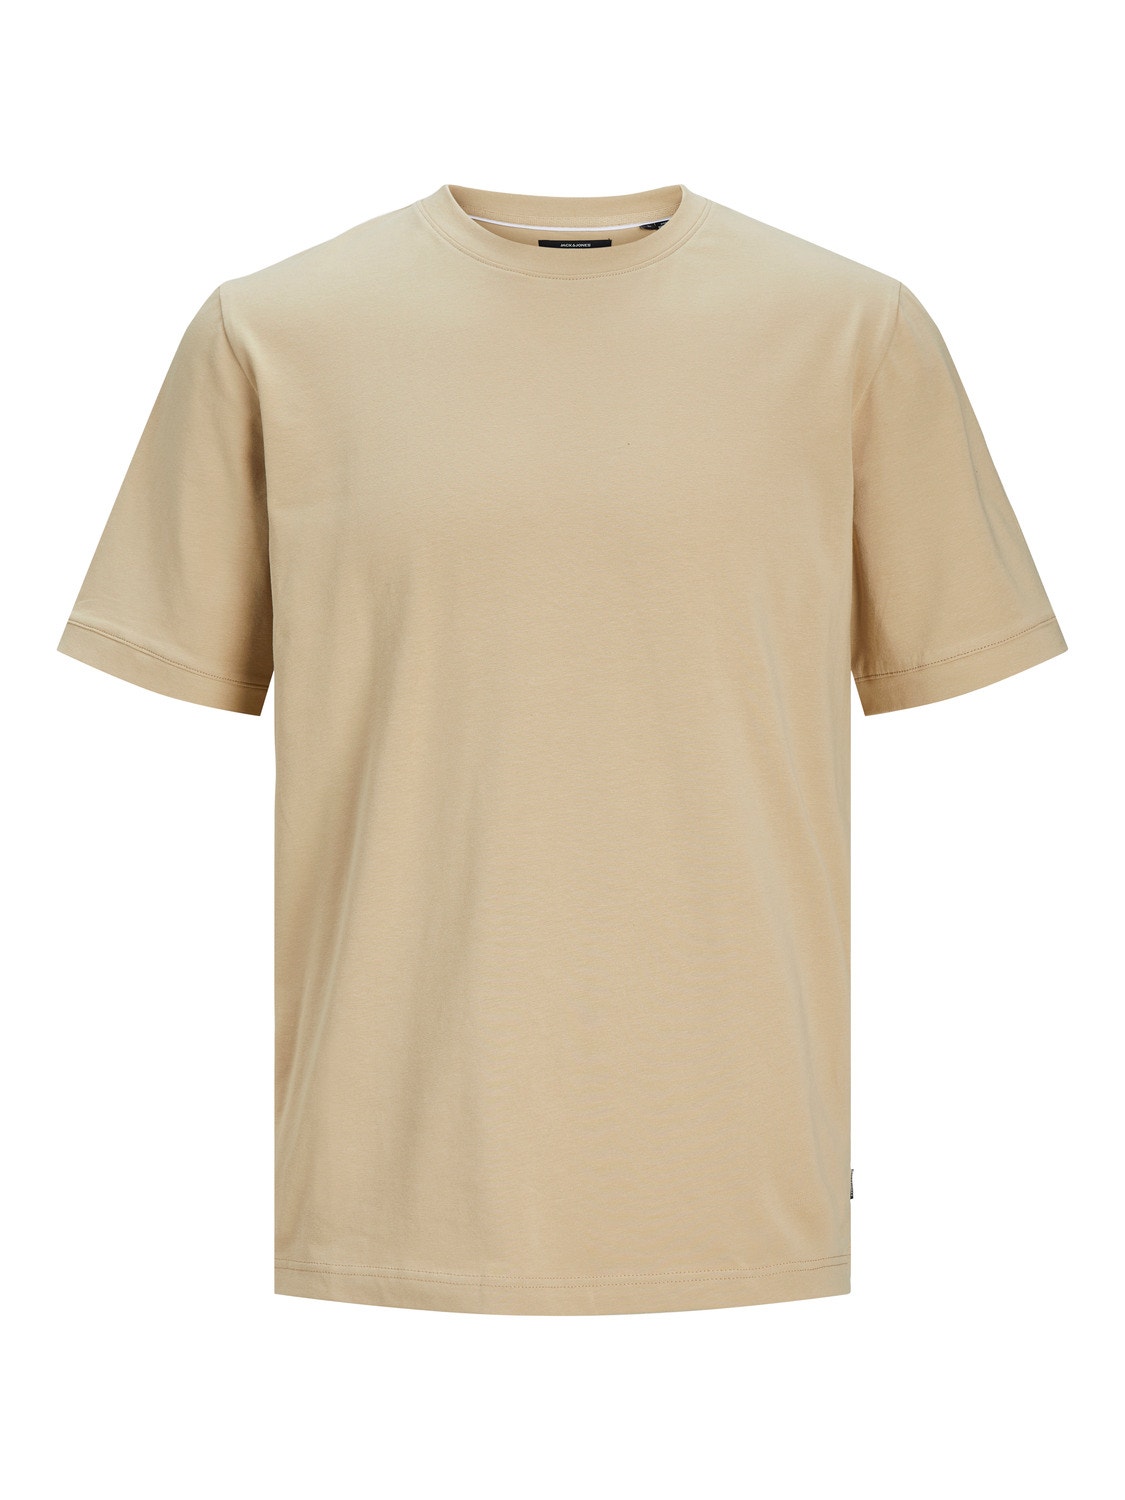 Jack & Jones T-shirt Liso Decote Redondo -Travertine - 12251351